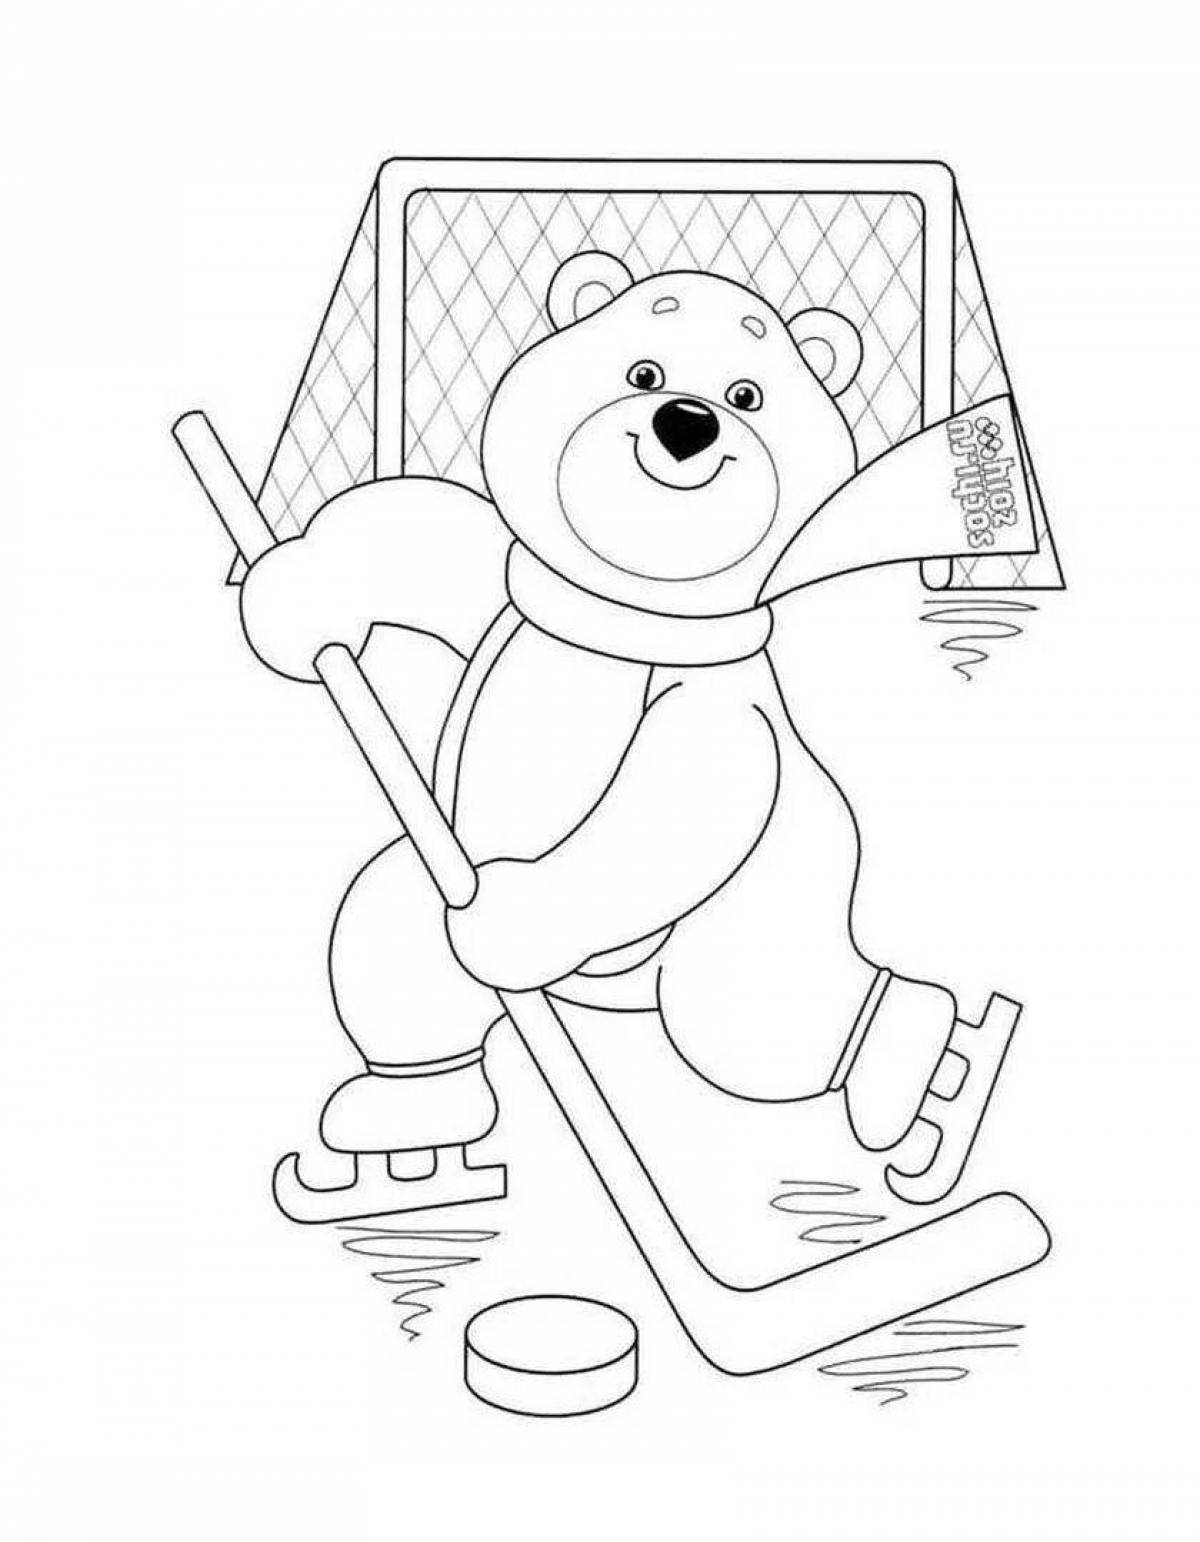 Раскраска славных олимпийских игр для детей